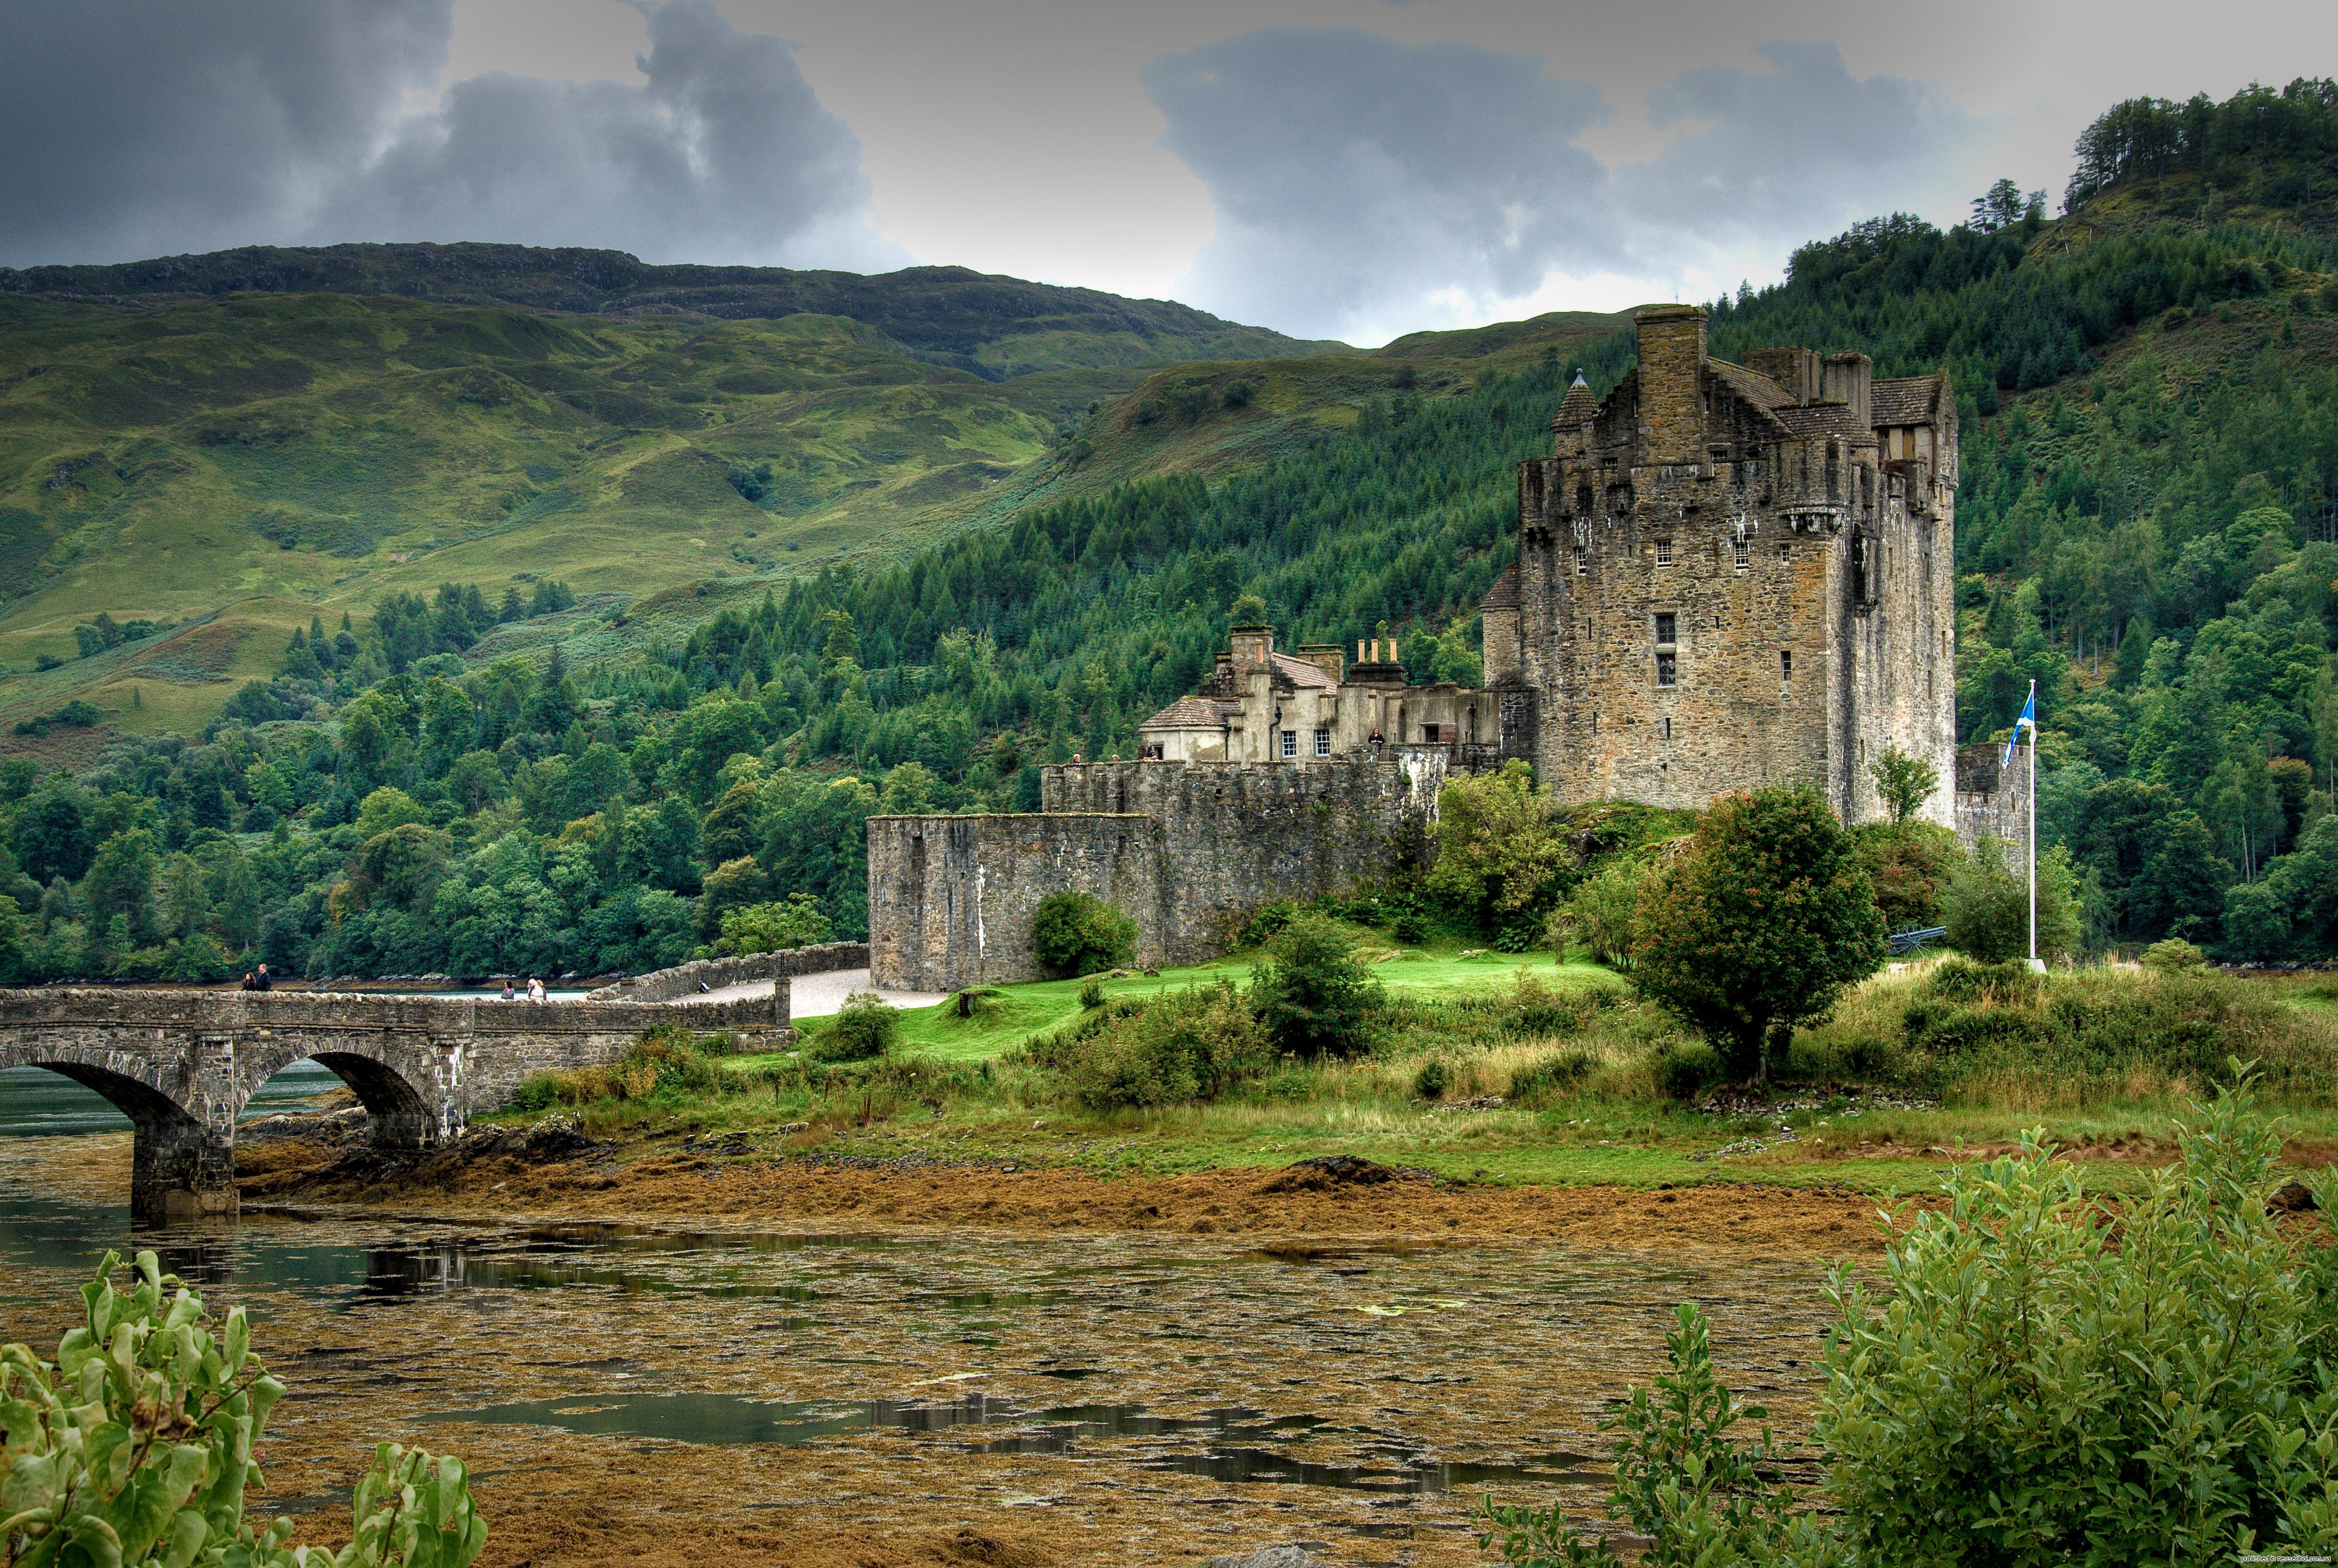 Scotland is beautiful. Замок Эйлен-Донан Шотландия. Замок Килхурн, Шотландия. Замок Эмброуз Шотландия. Замок «Грайч», Уэльс.